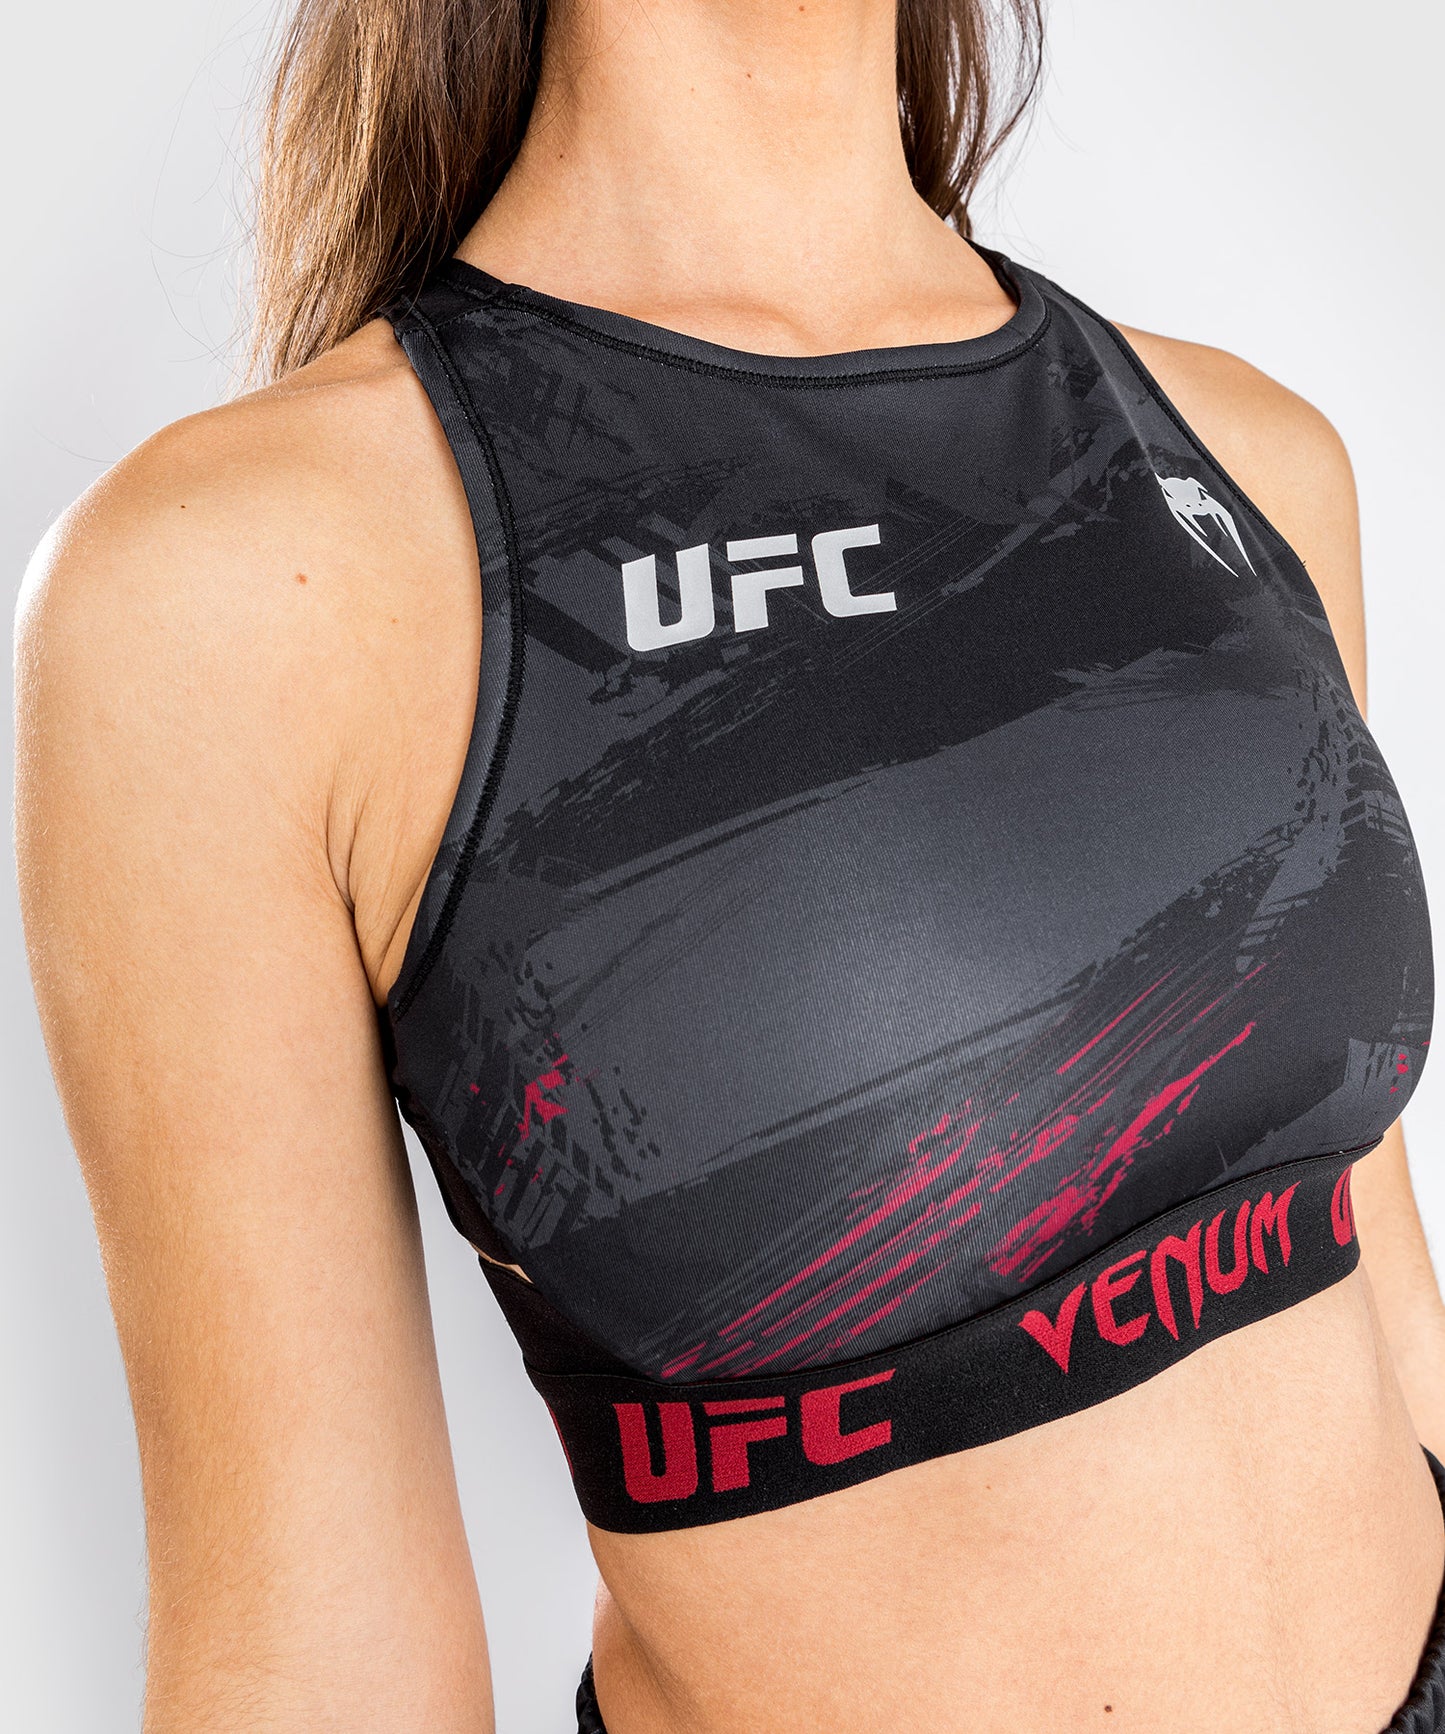 UFC Venum Authentic Fight Week 2.0 Women’s Weigh-in Bra - Black/Red